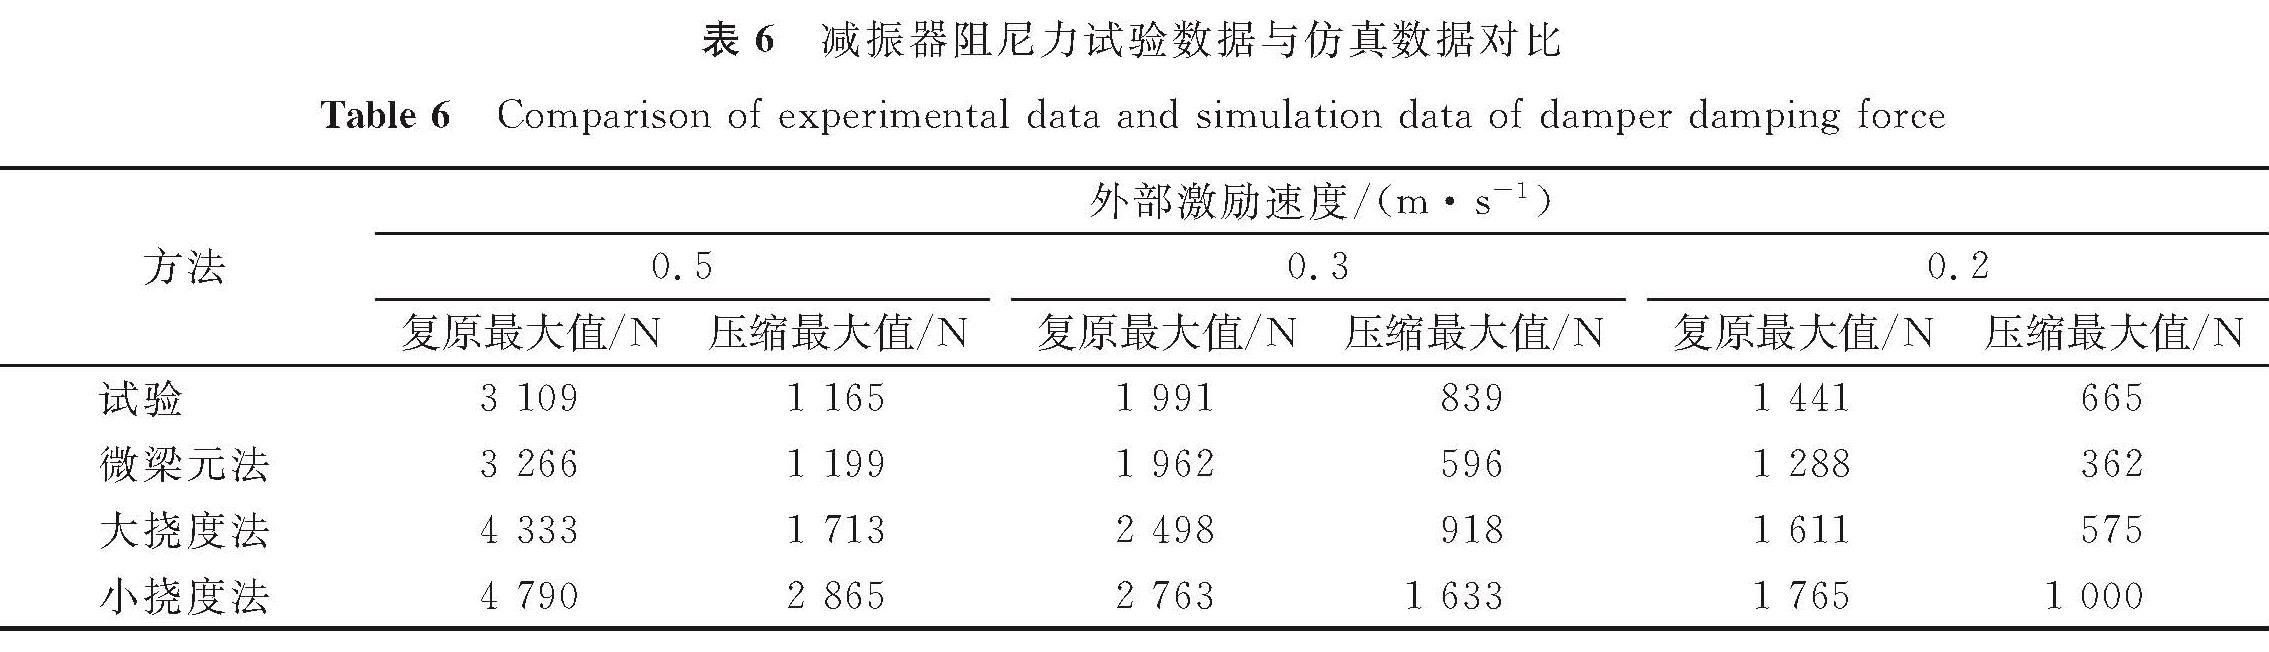 表6 减振器阻尼力试验数据与仿真数据对比<br/>Table 6 Comparison of experimental data and simulation data of damper damping force